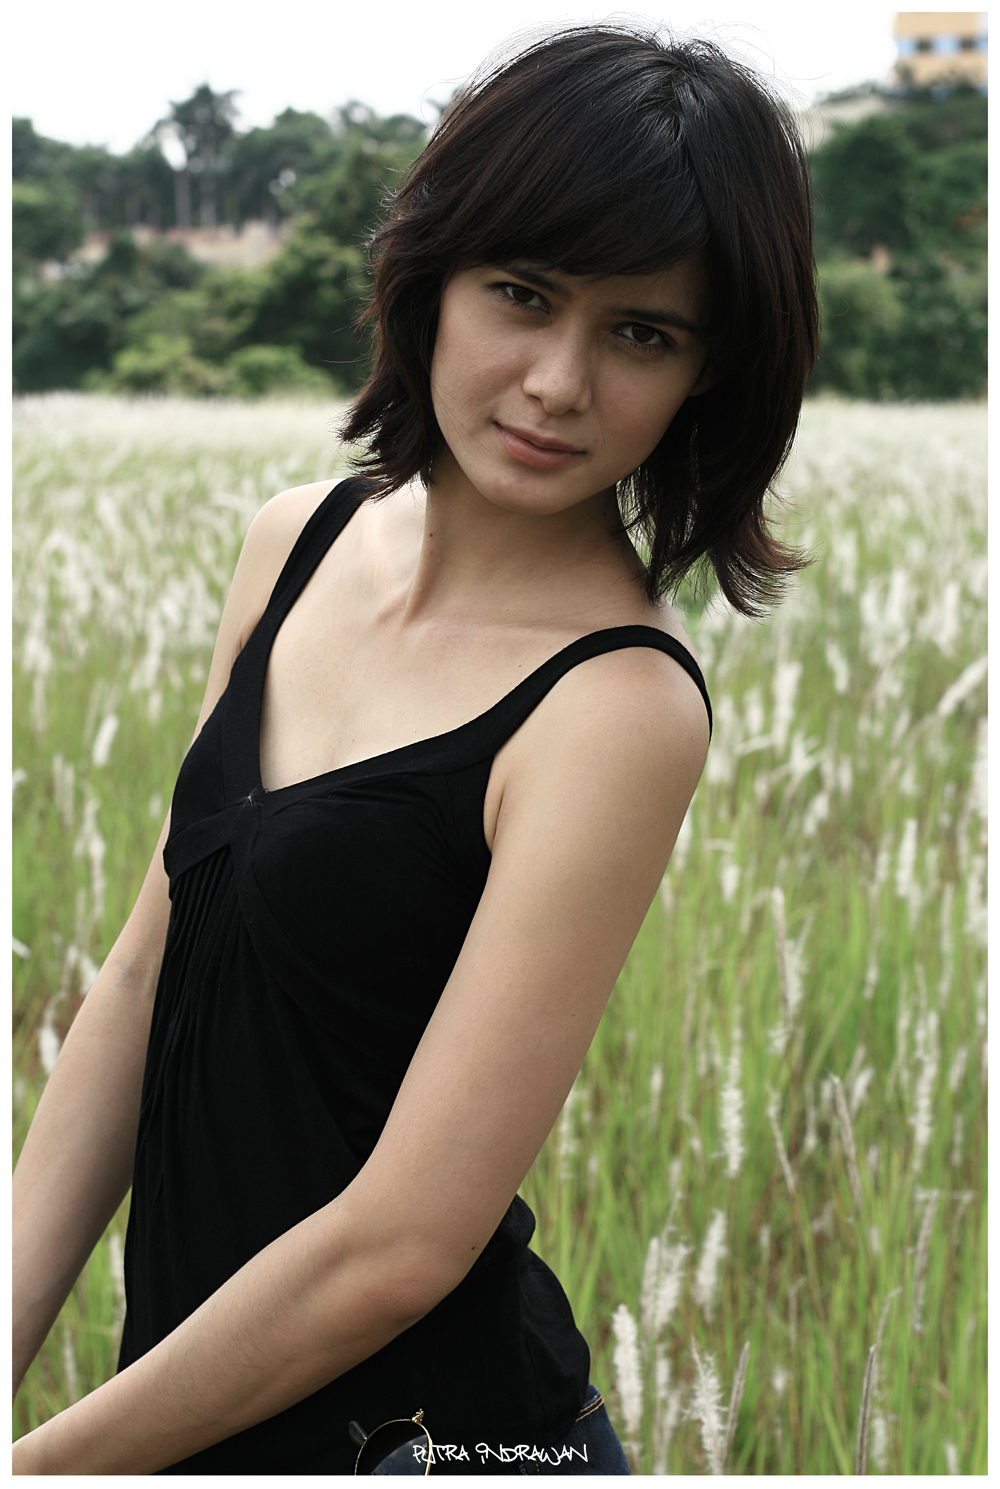 Foto Hot Artis Dan Model Renata Kusmanto Makassar Info